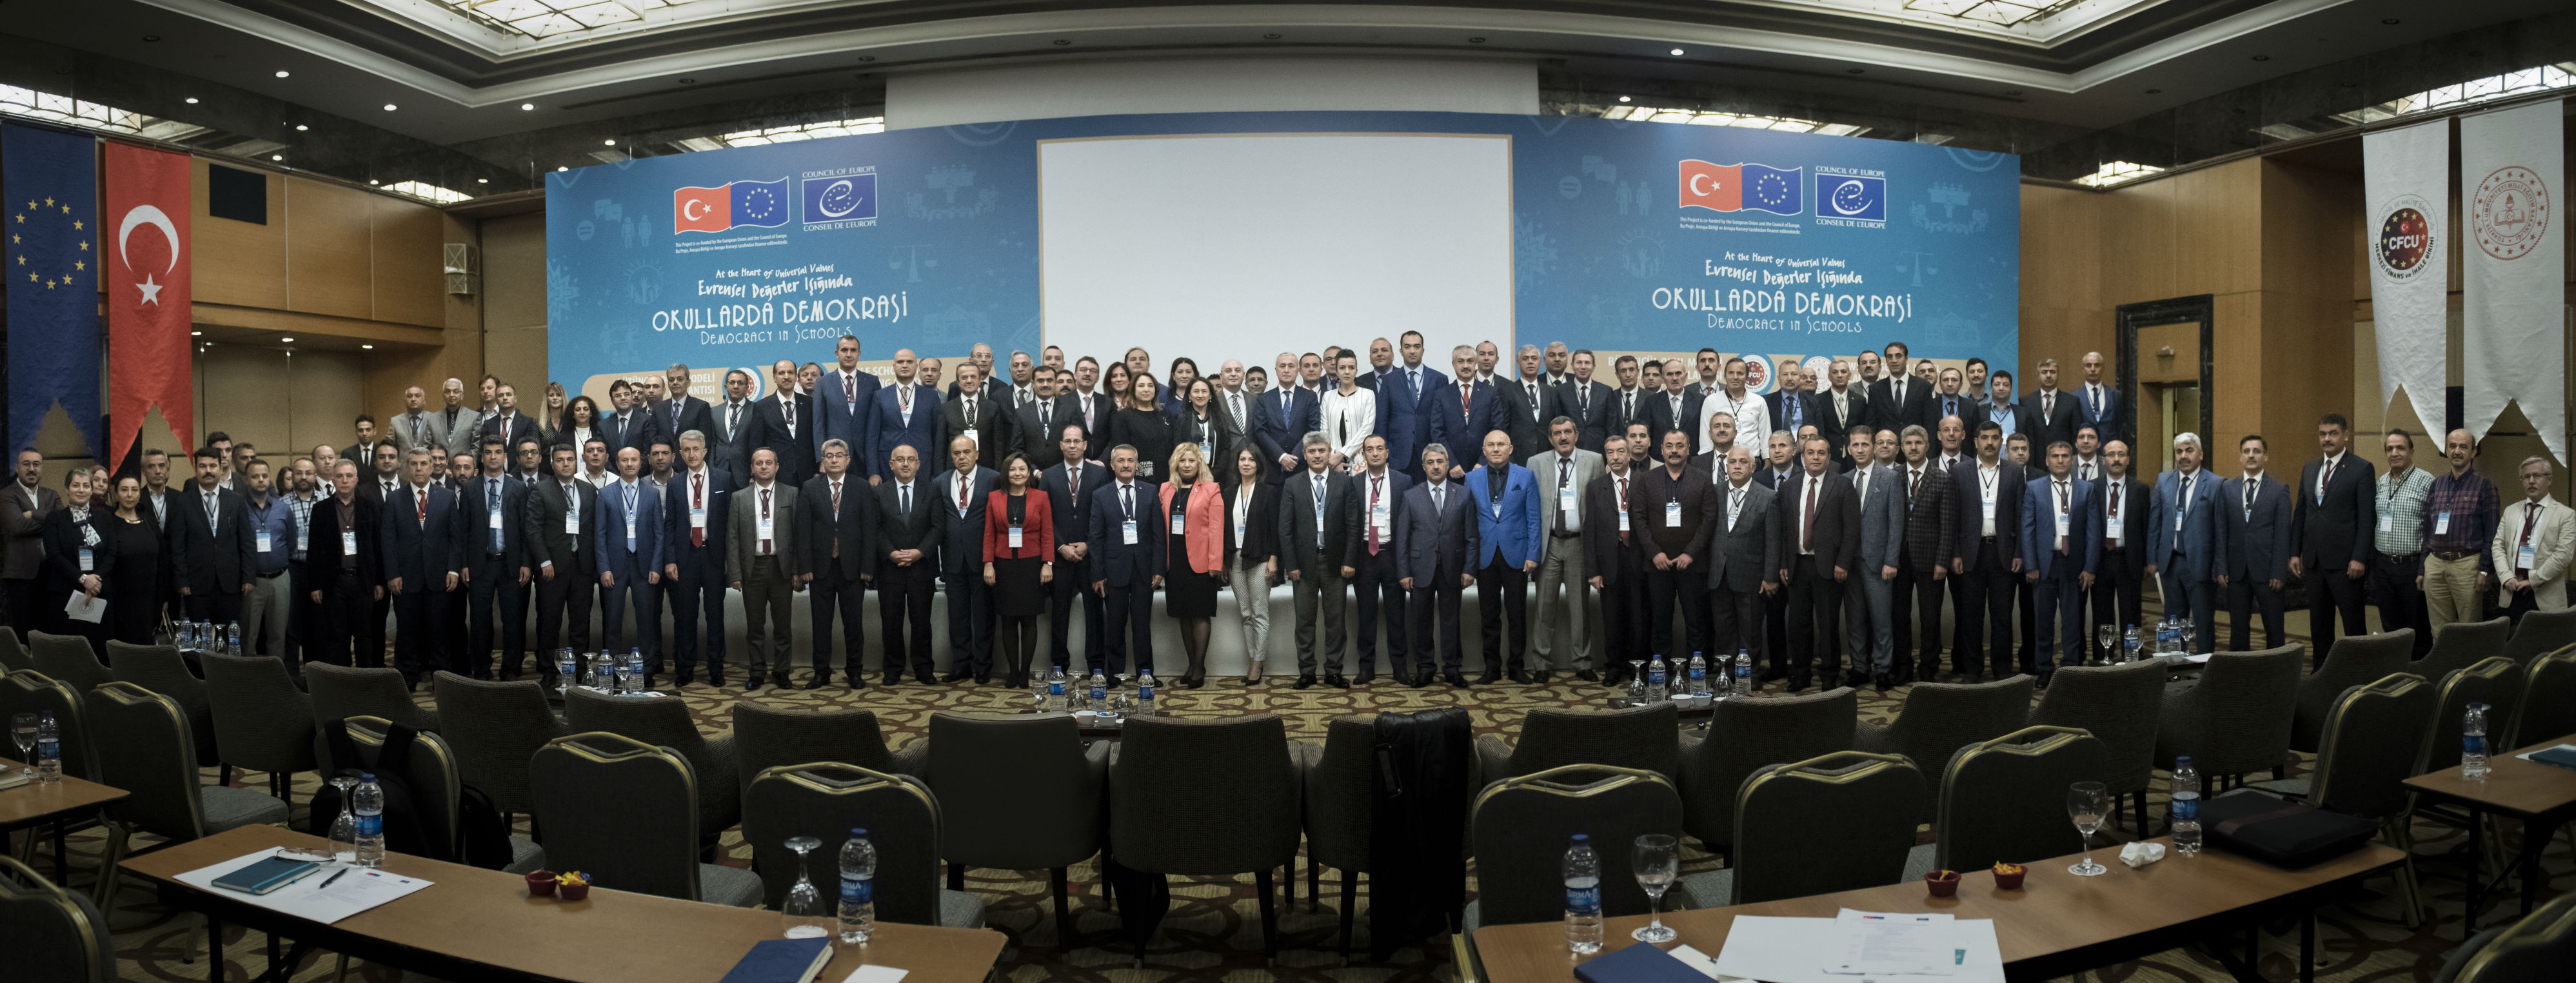 İl ve İlçe Millî Eğitim Temsilcilerine Yönelik “Bütüncül Okul Modeli Tanıtım Toplantısı” Ankara’da Gerçekleştirildi